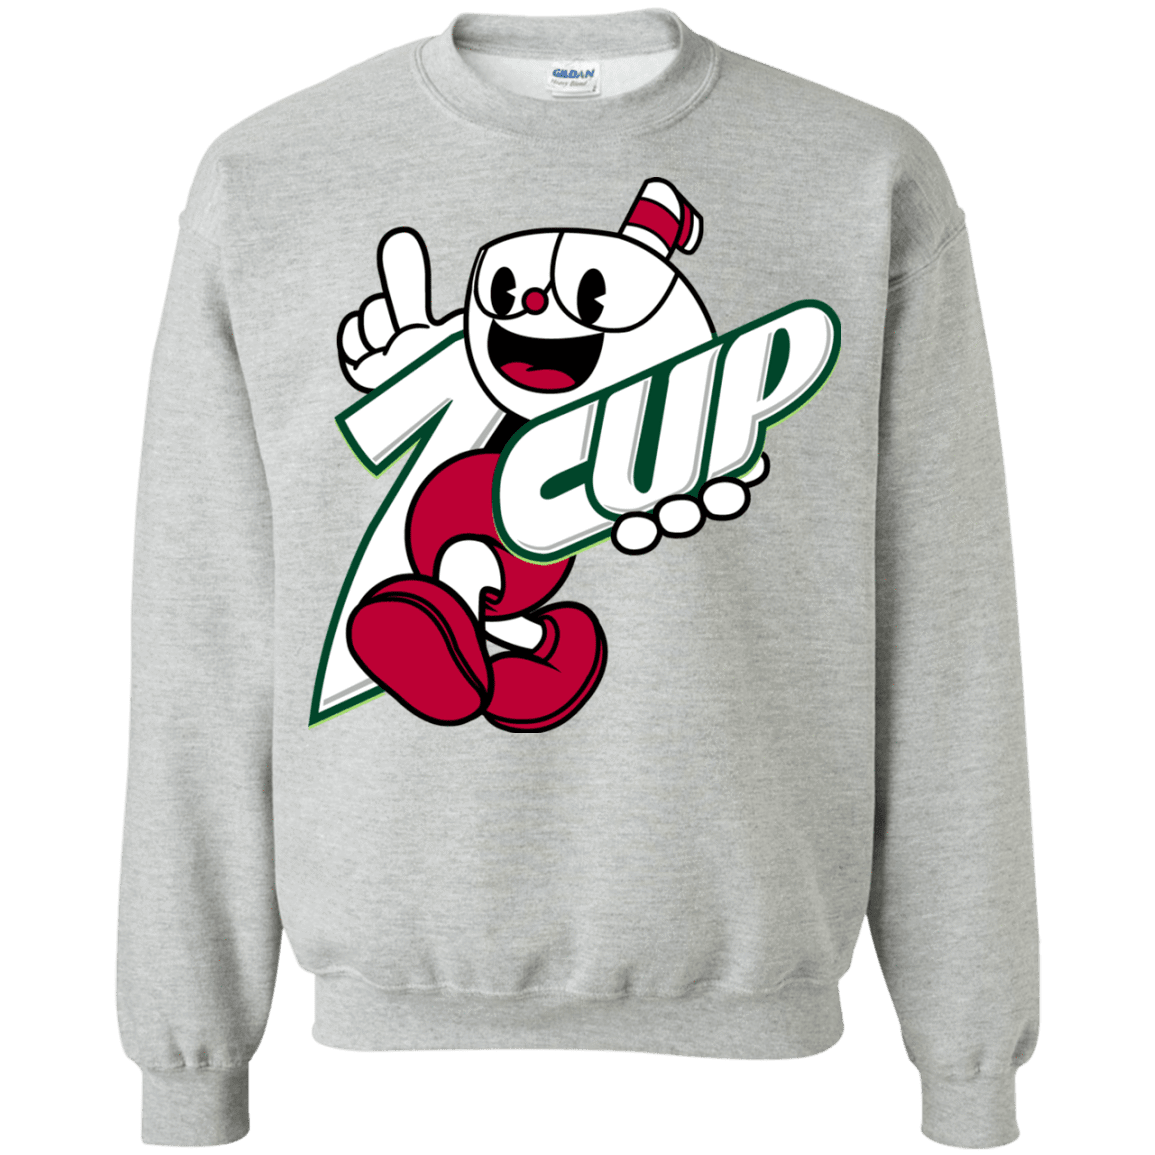 1cup Crewneck Sweatshirt